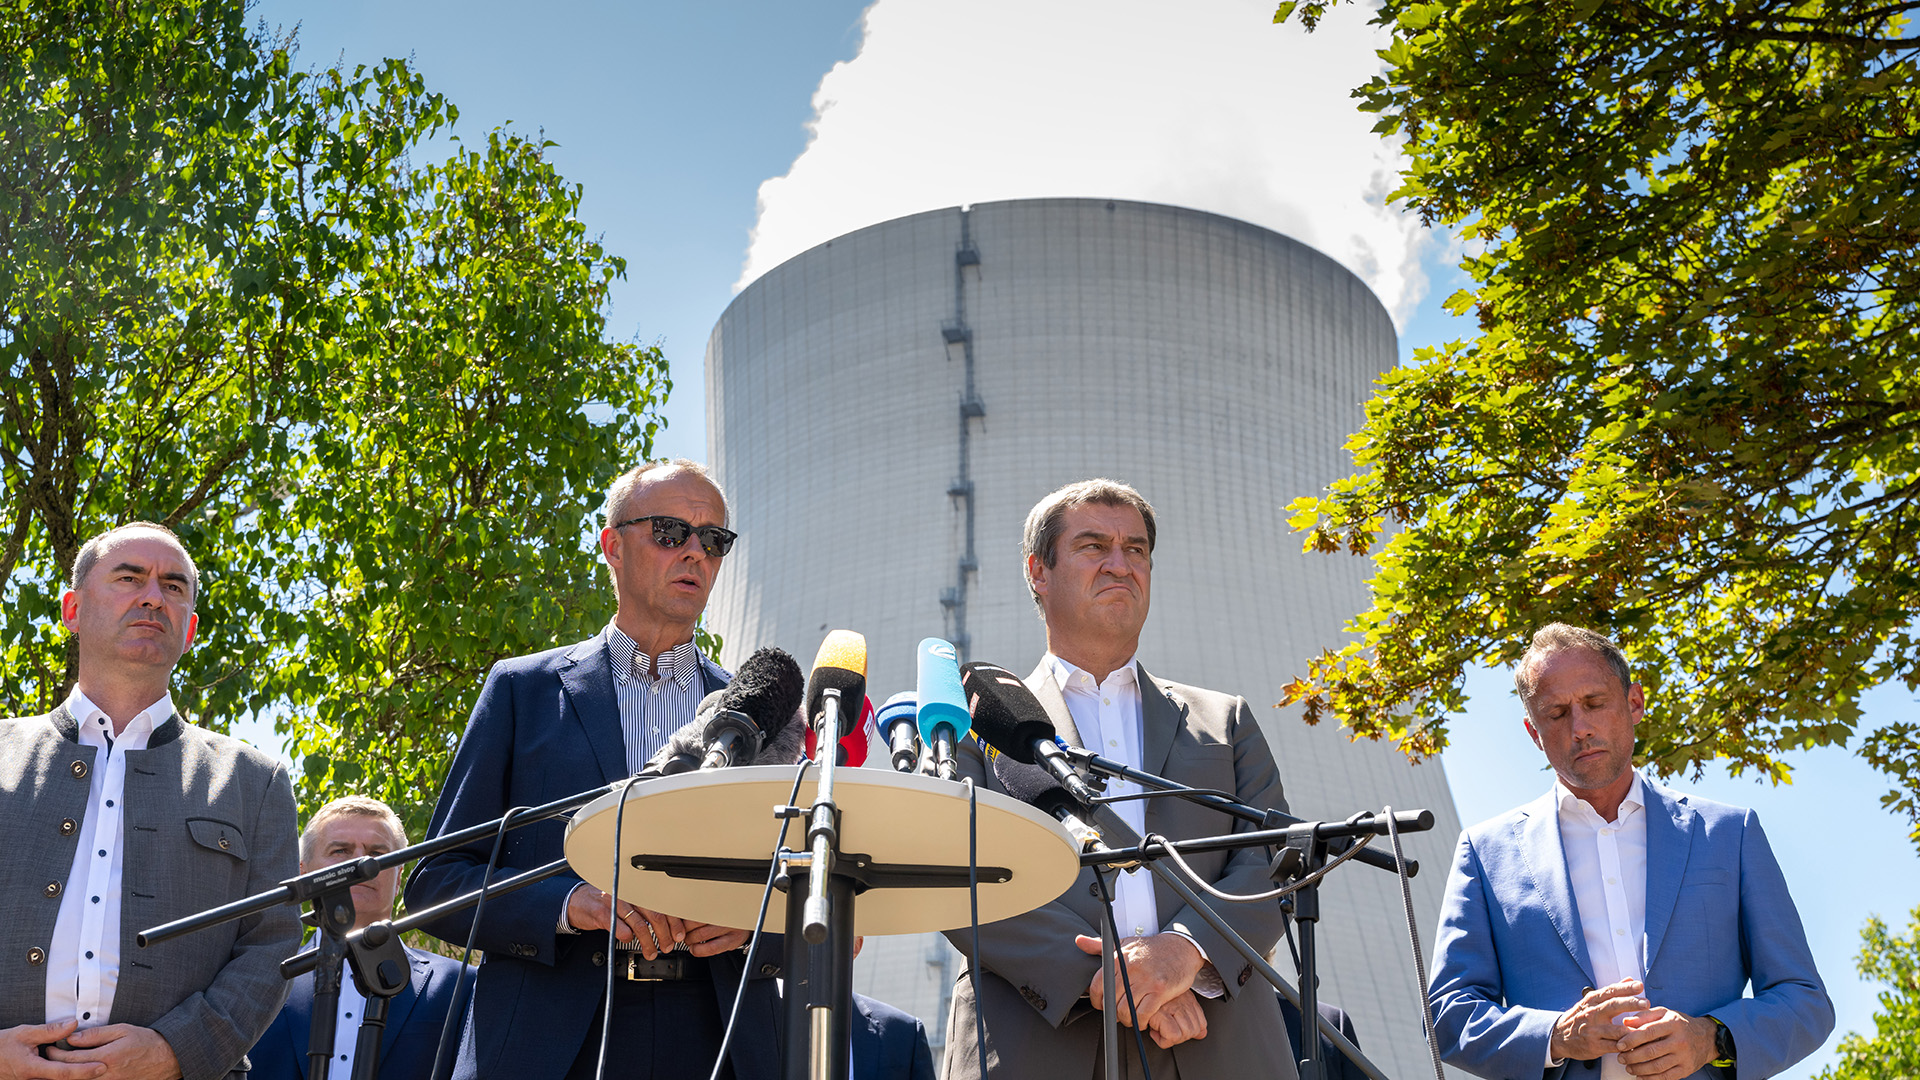 Hubert Aiwanger, Friedrich Merz, Markus Söder und Thorsten Glauber stehen vor dem Kühlturm des Kernkraftwerks Isar 2. | dpa